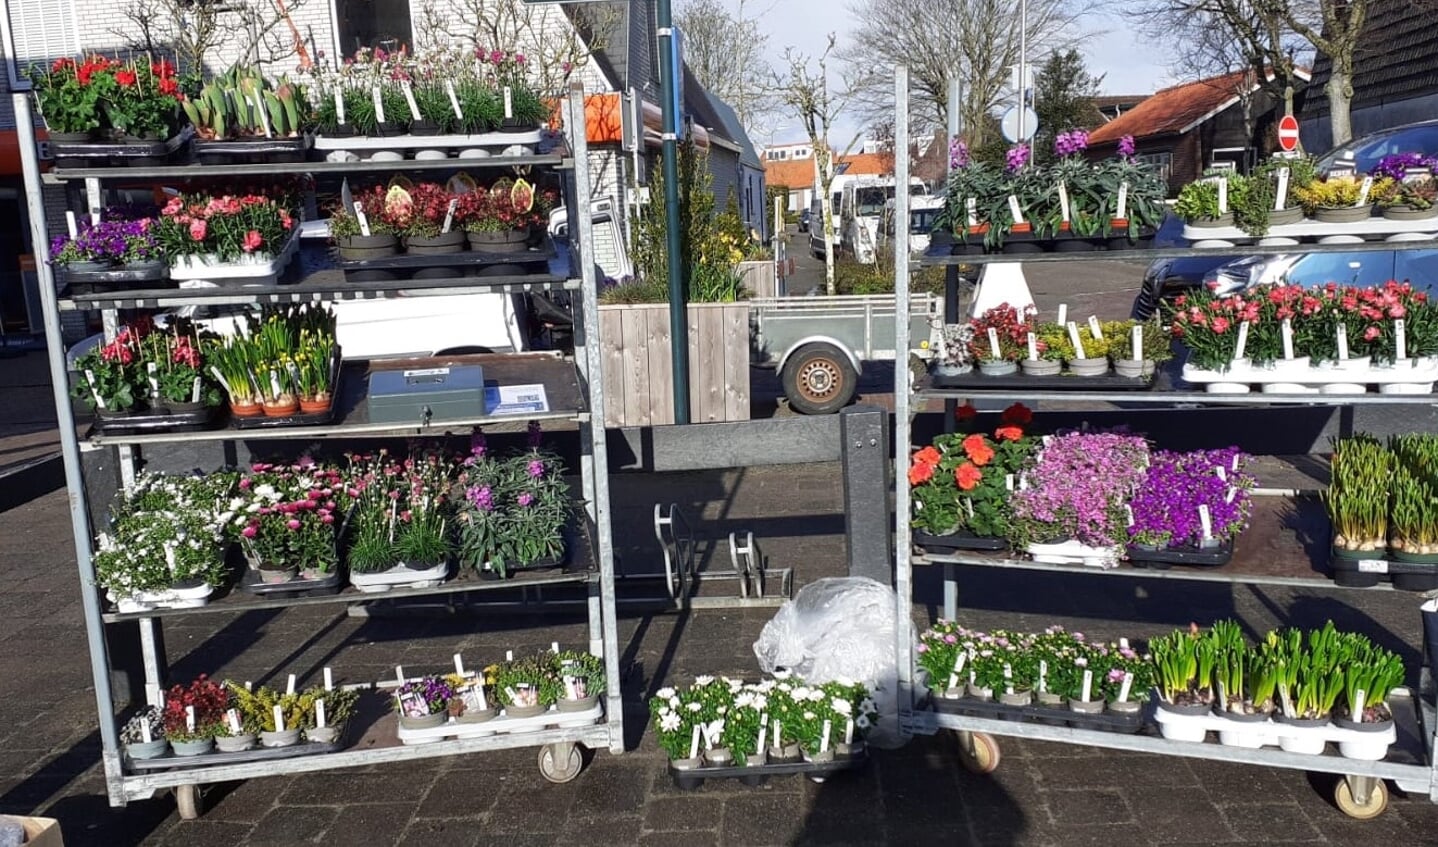 Tuincentrum van der Werve heeft een mooi assortiment tuinplanten voor vandaag ingekocht.